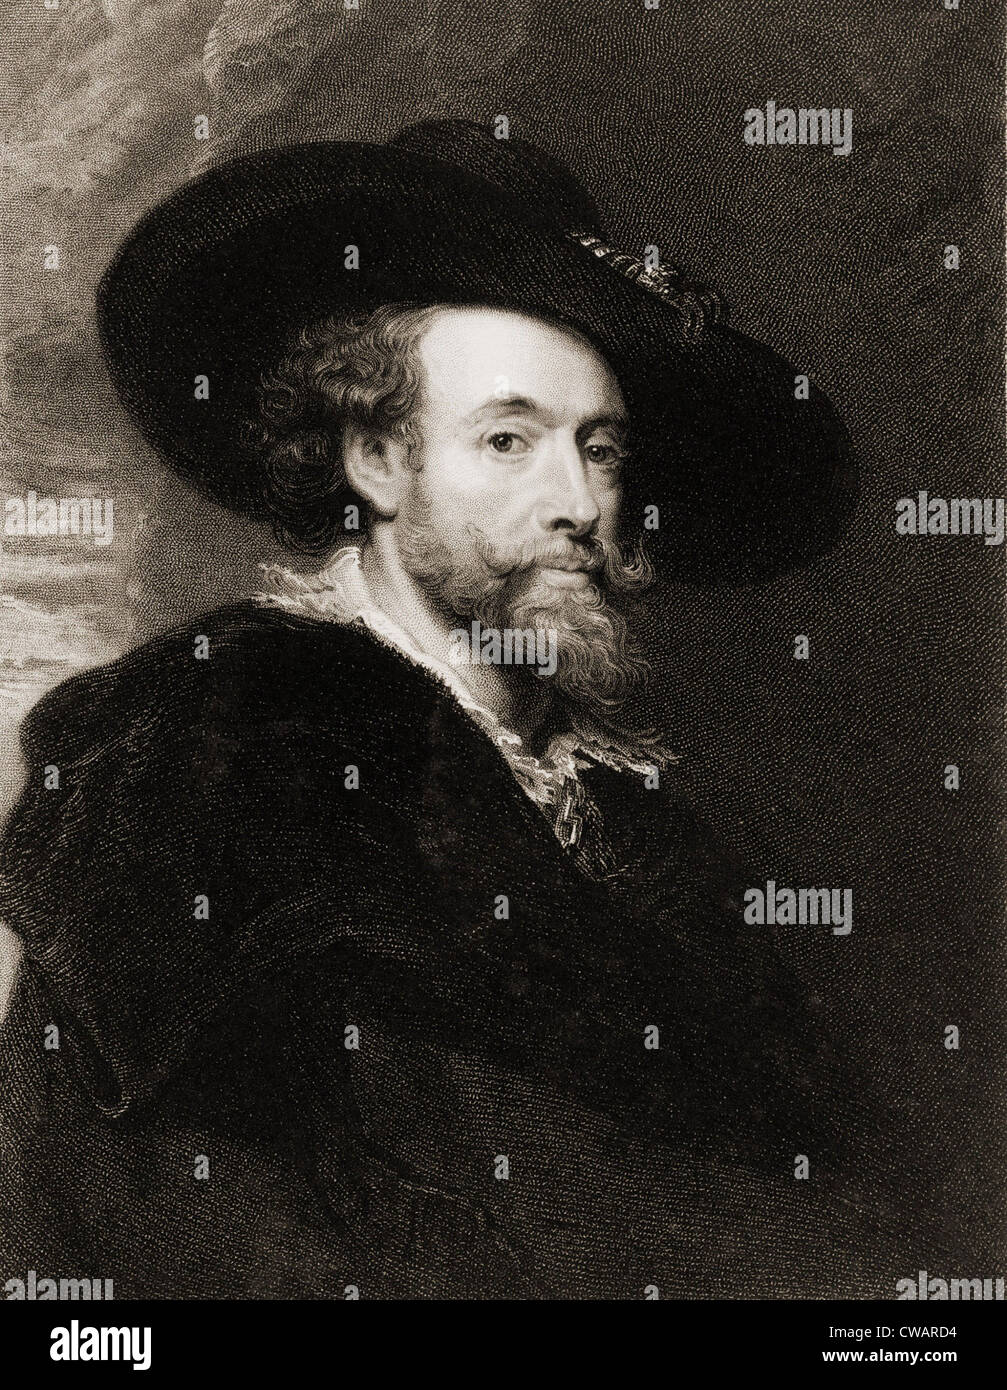 Peter Paul Rubens (1577-1640), peintre baroque flamand en 1625. Gravure du xixe siècle par James Posselwhite. Banque D'Images